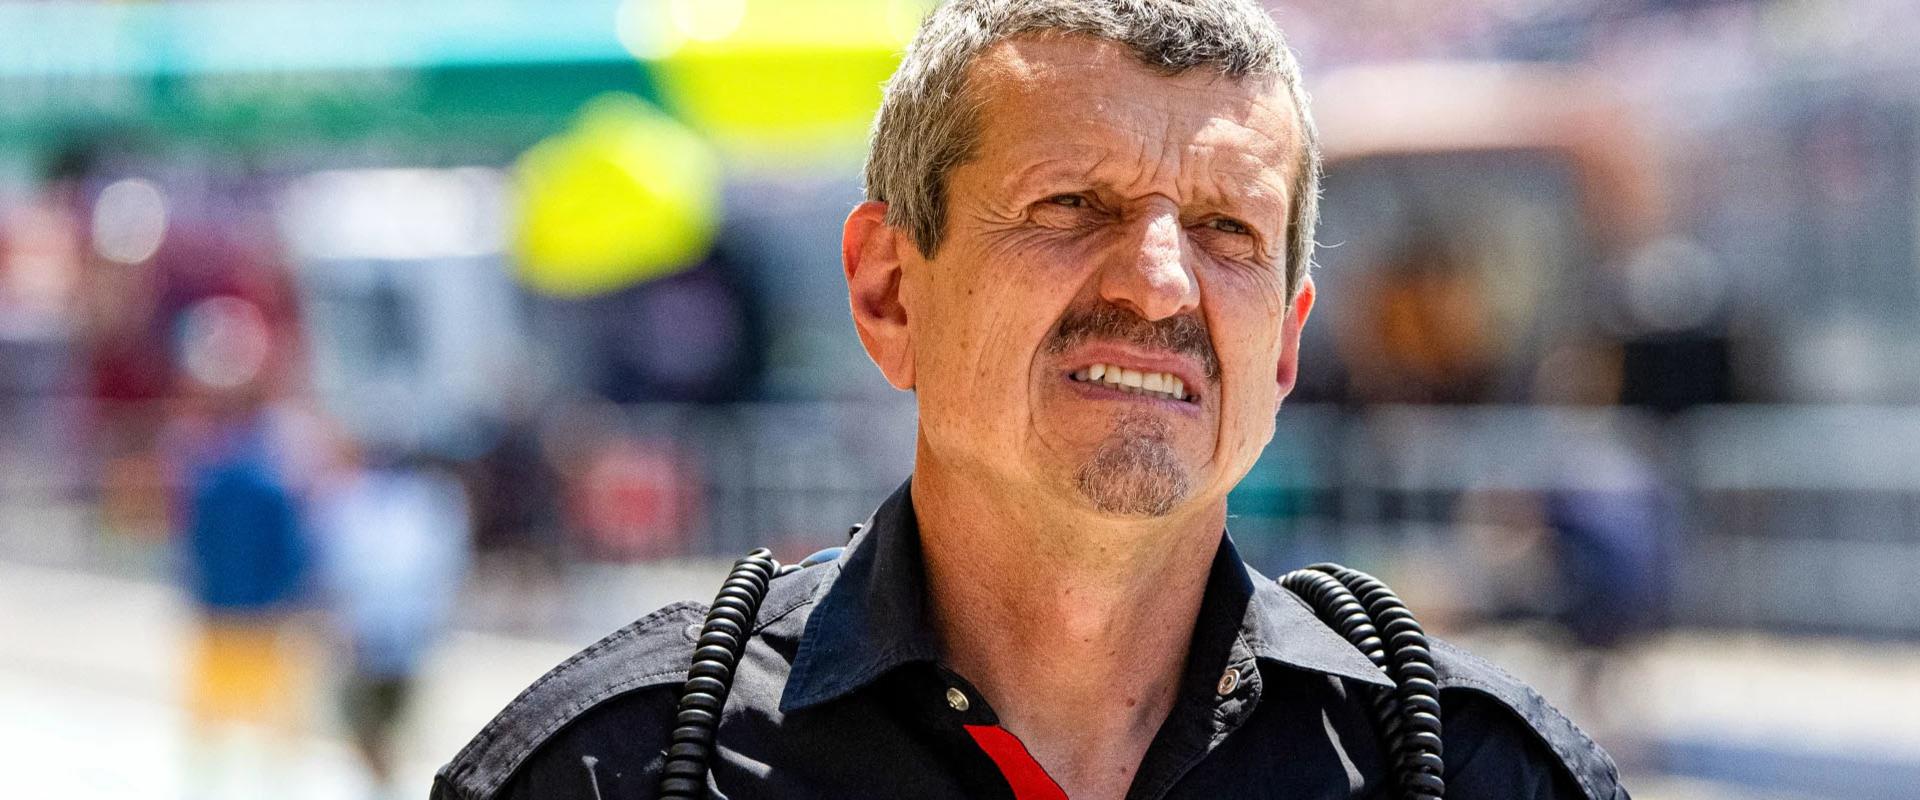 Munkahelyi vígjáték készül a folyton káromkodó F1-es csapatfőnökről